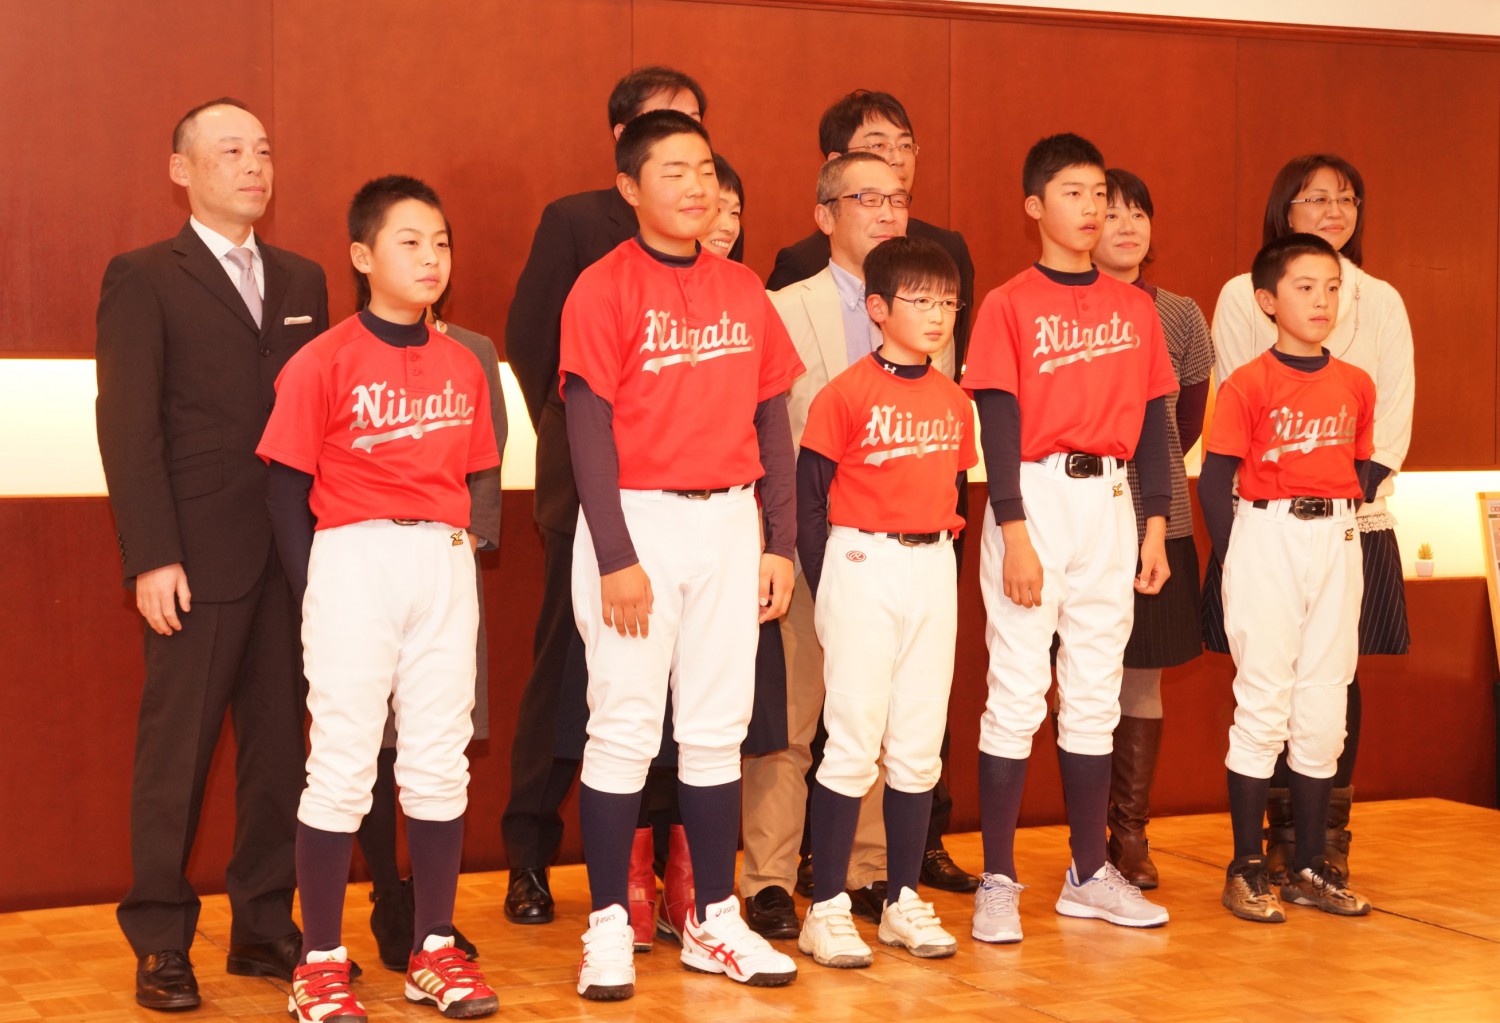 中学硬式 新潟ヤング入卒団式 14人が高校での飛躍誓う 新潟野球ドットコム